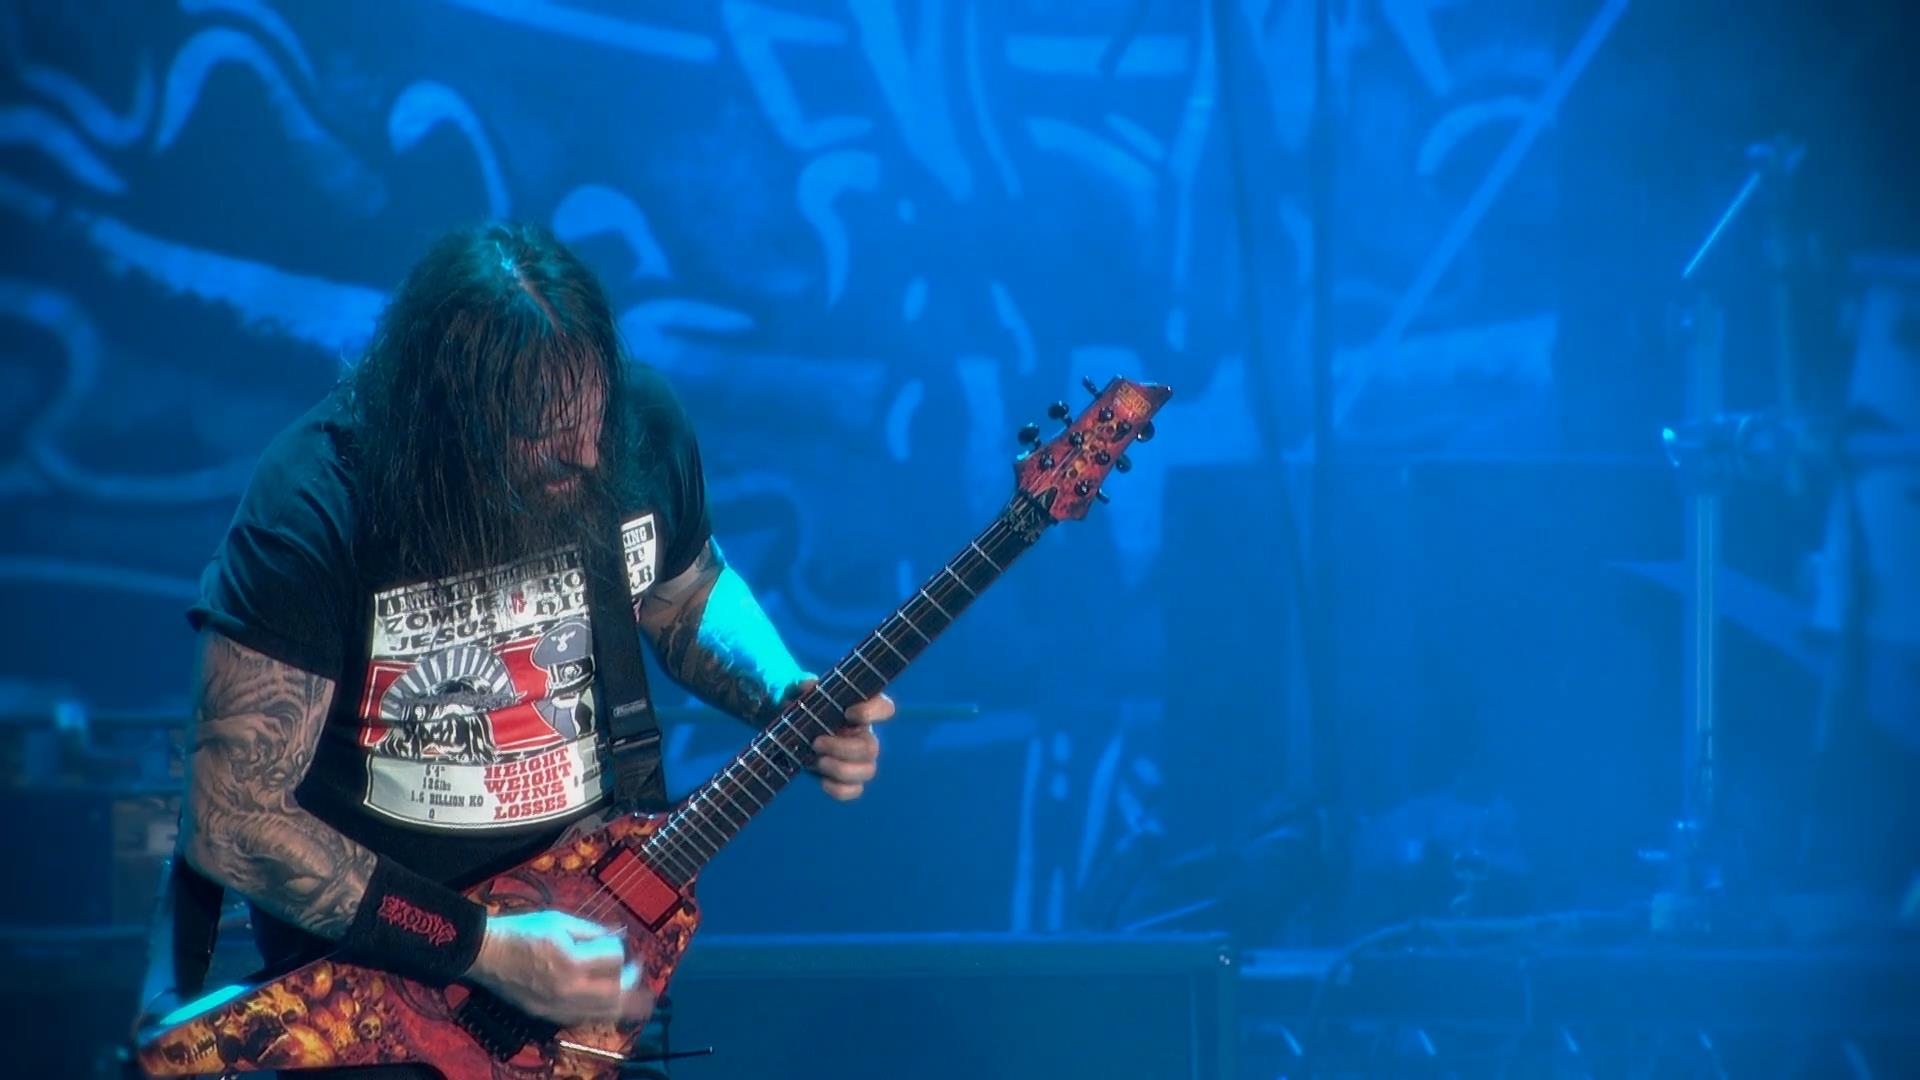 Slayer.Repentless.Live.At.Wacken.2014.1080p.mkv_snapshot_00.46.29_.jpg